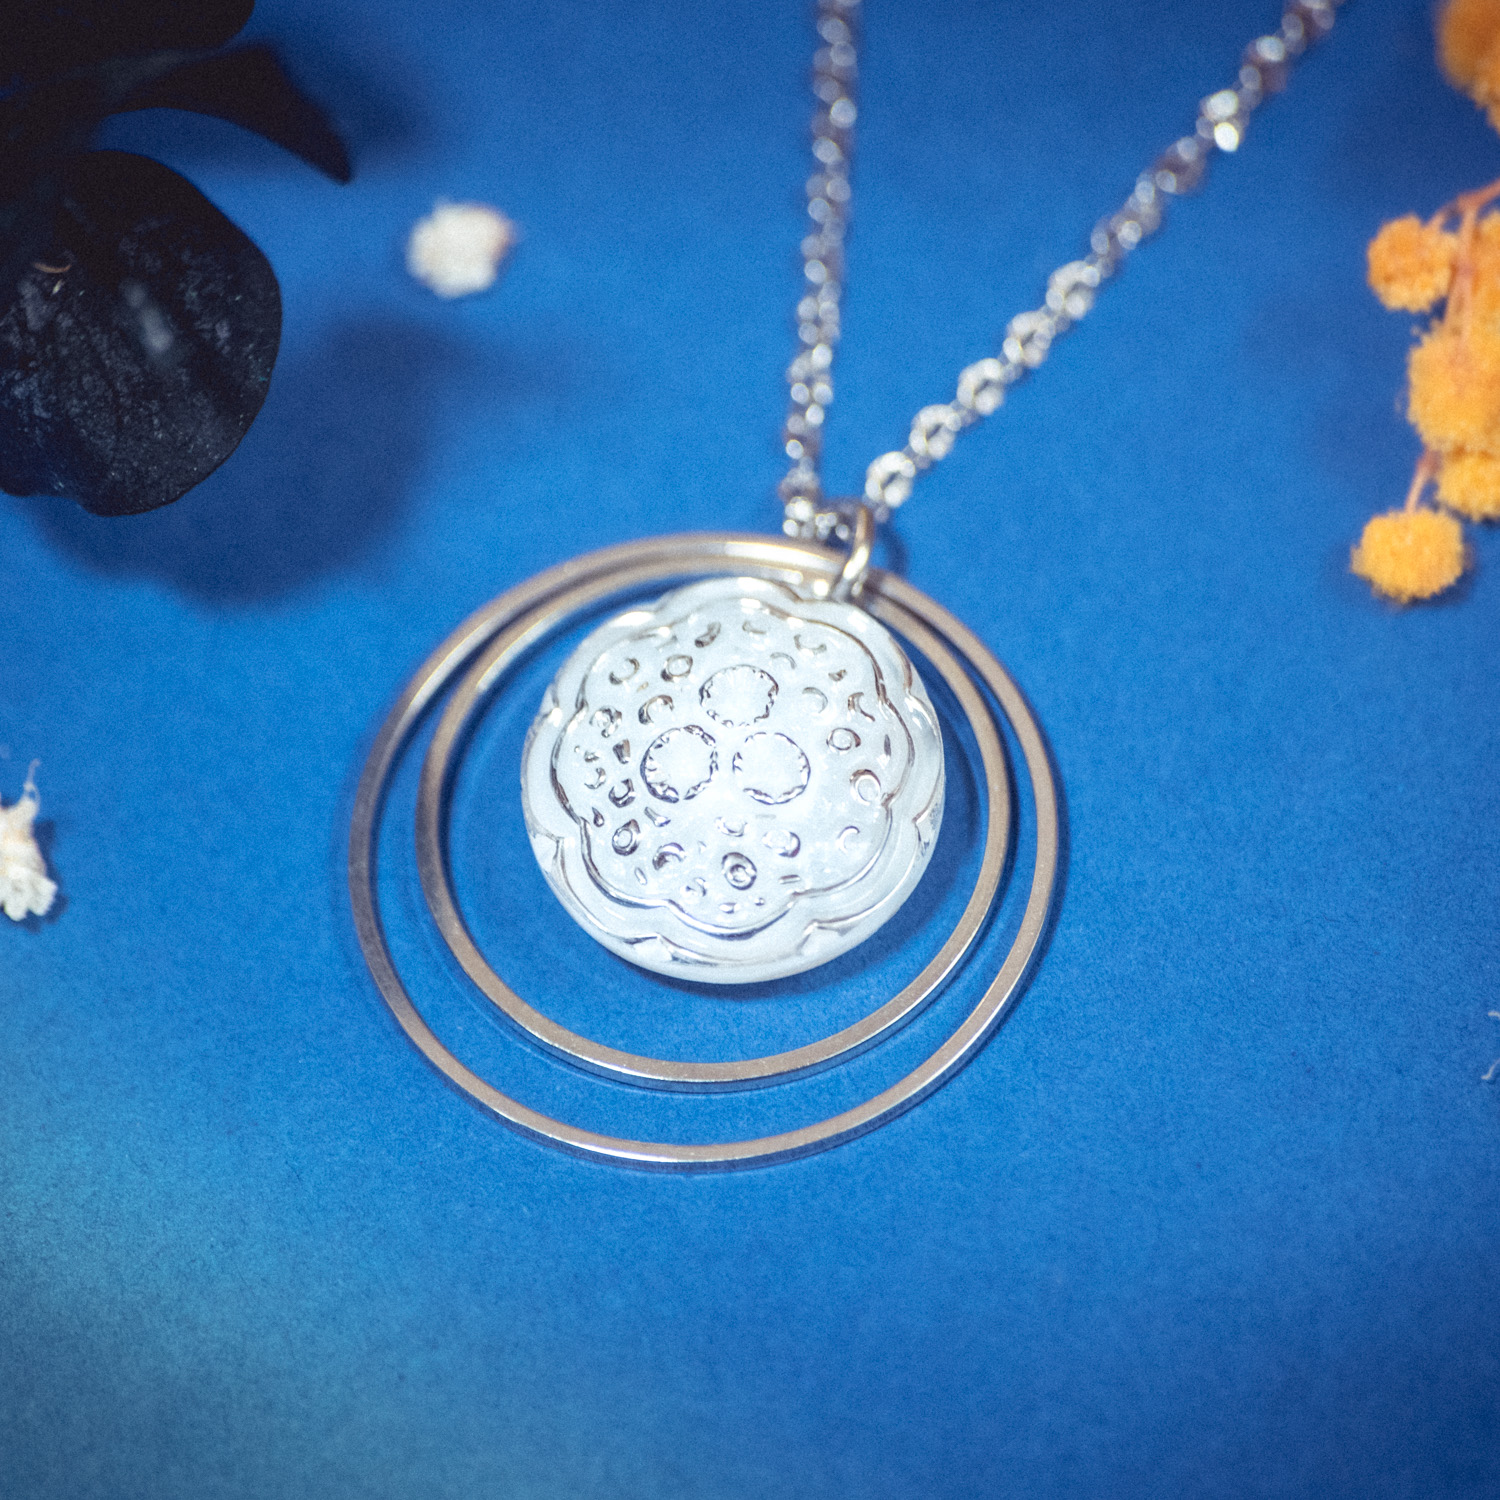 Assuna – Collier Lunare Ombeline – bouton ancien 1940 – collier d’inspiration vintage en forme de croissant de lune